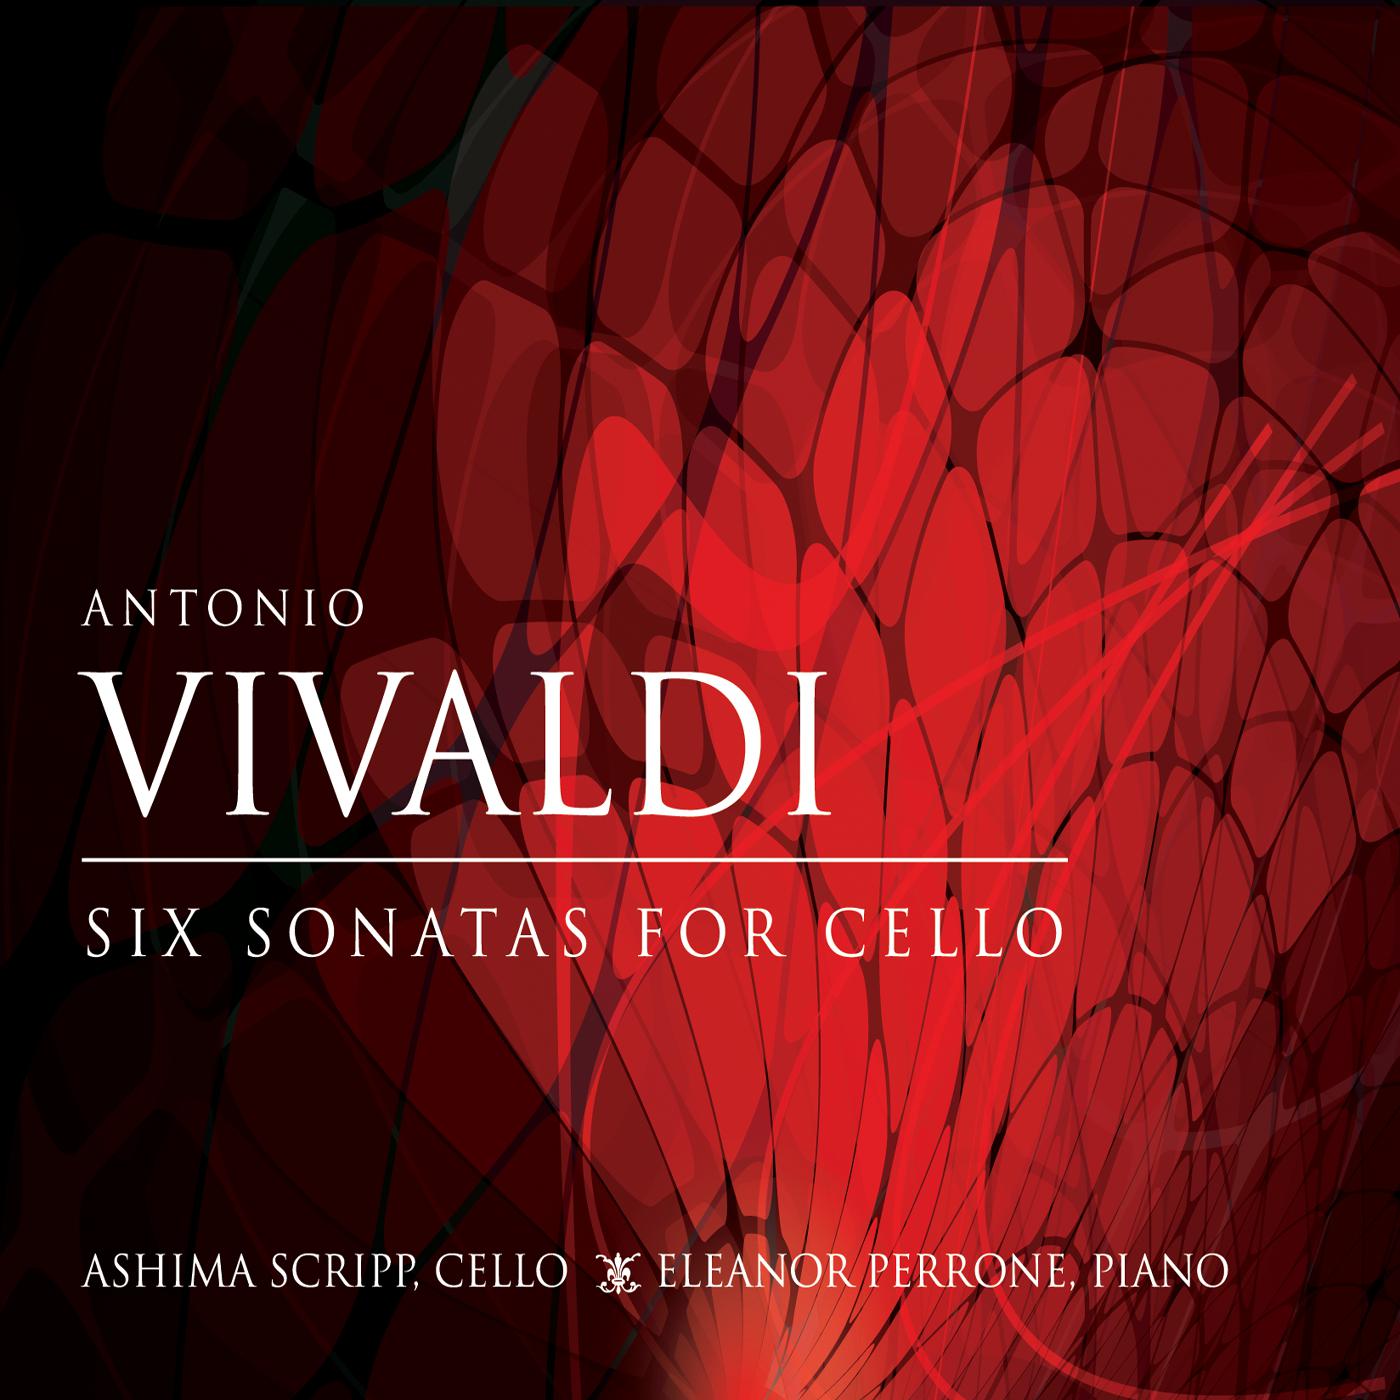 Vivaldi Sonatas for Cello